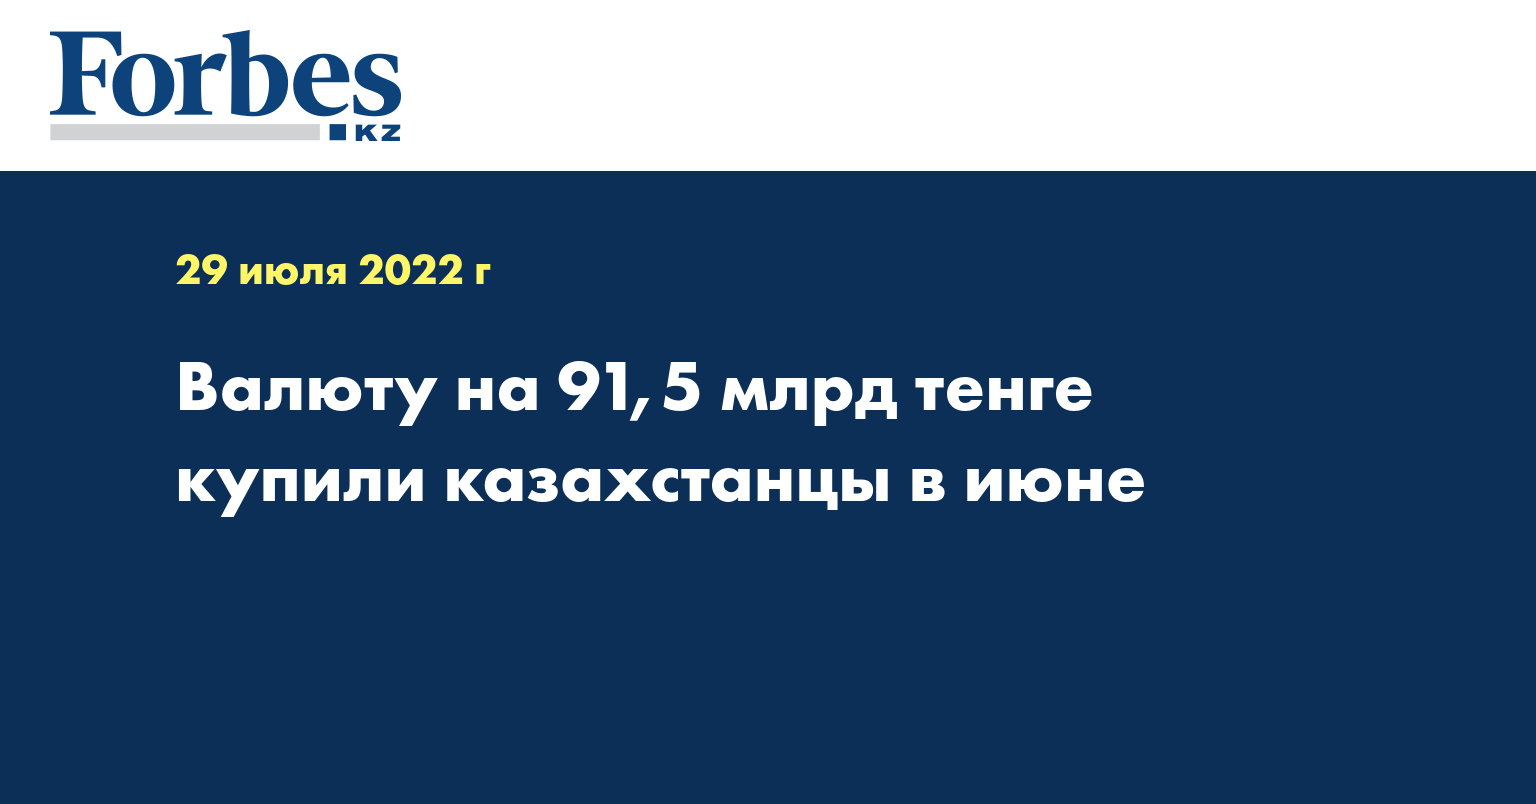 Валюту на 91,5 млрд тенге купили казахстанцы в июне